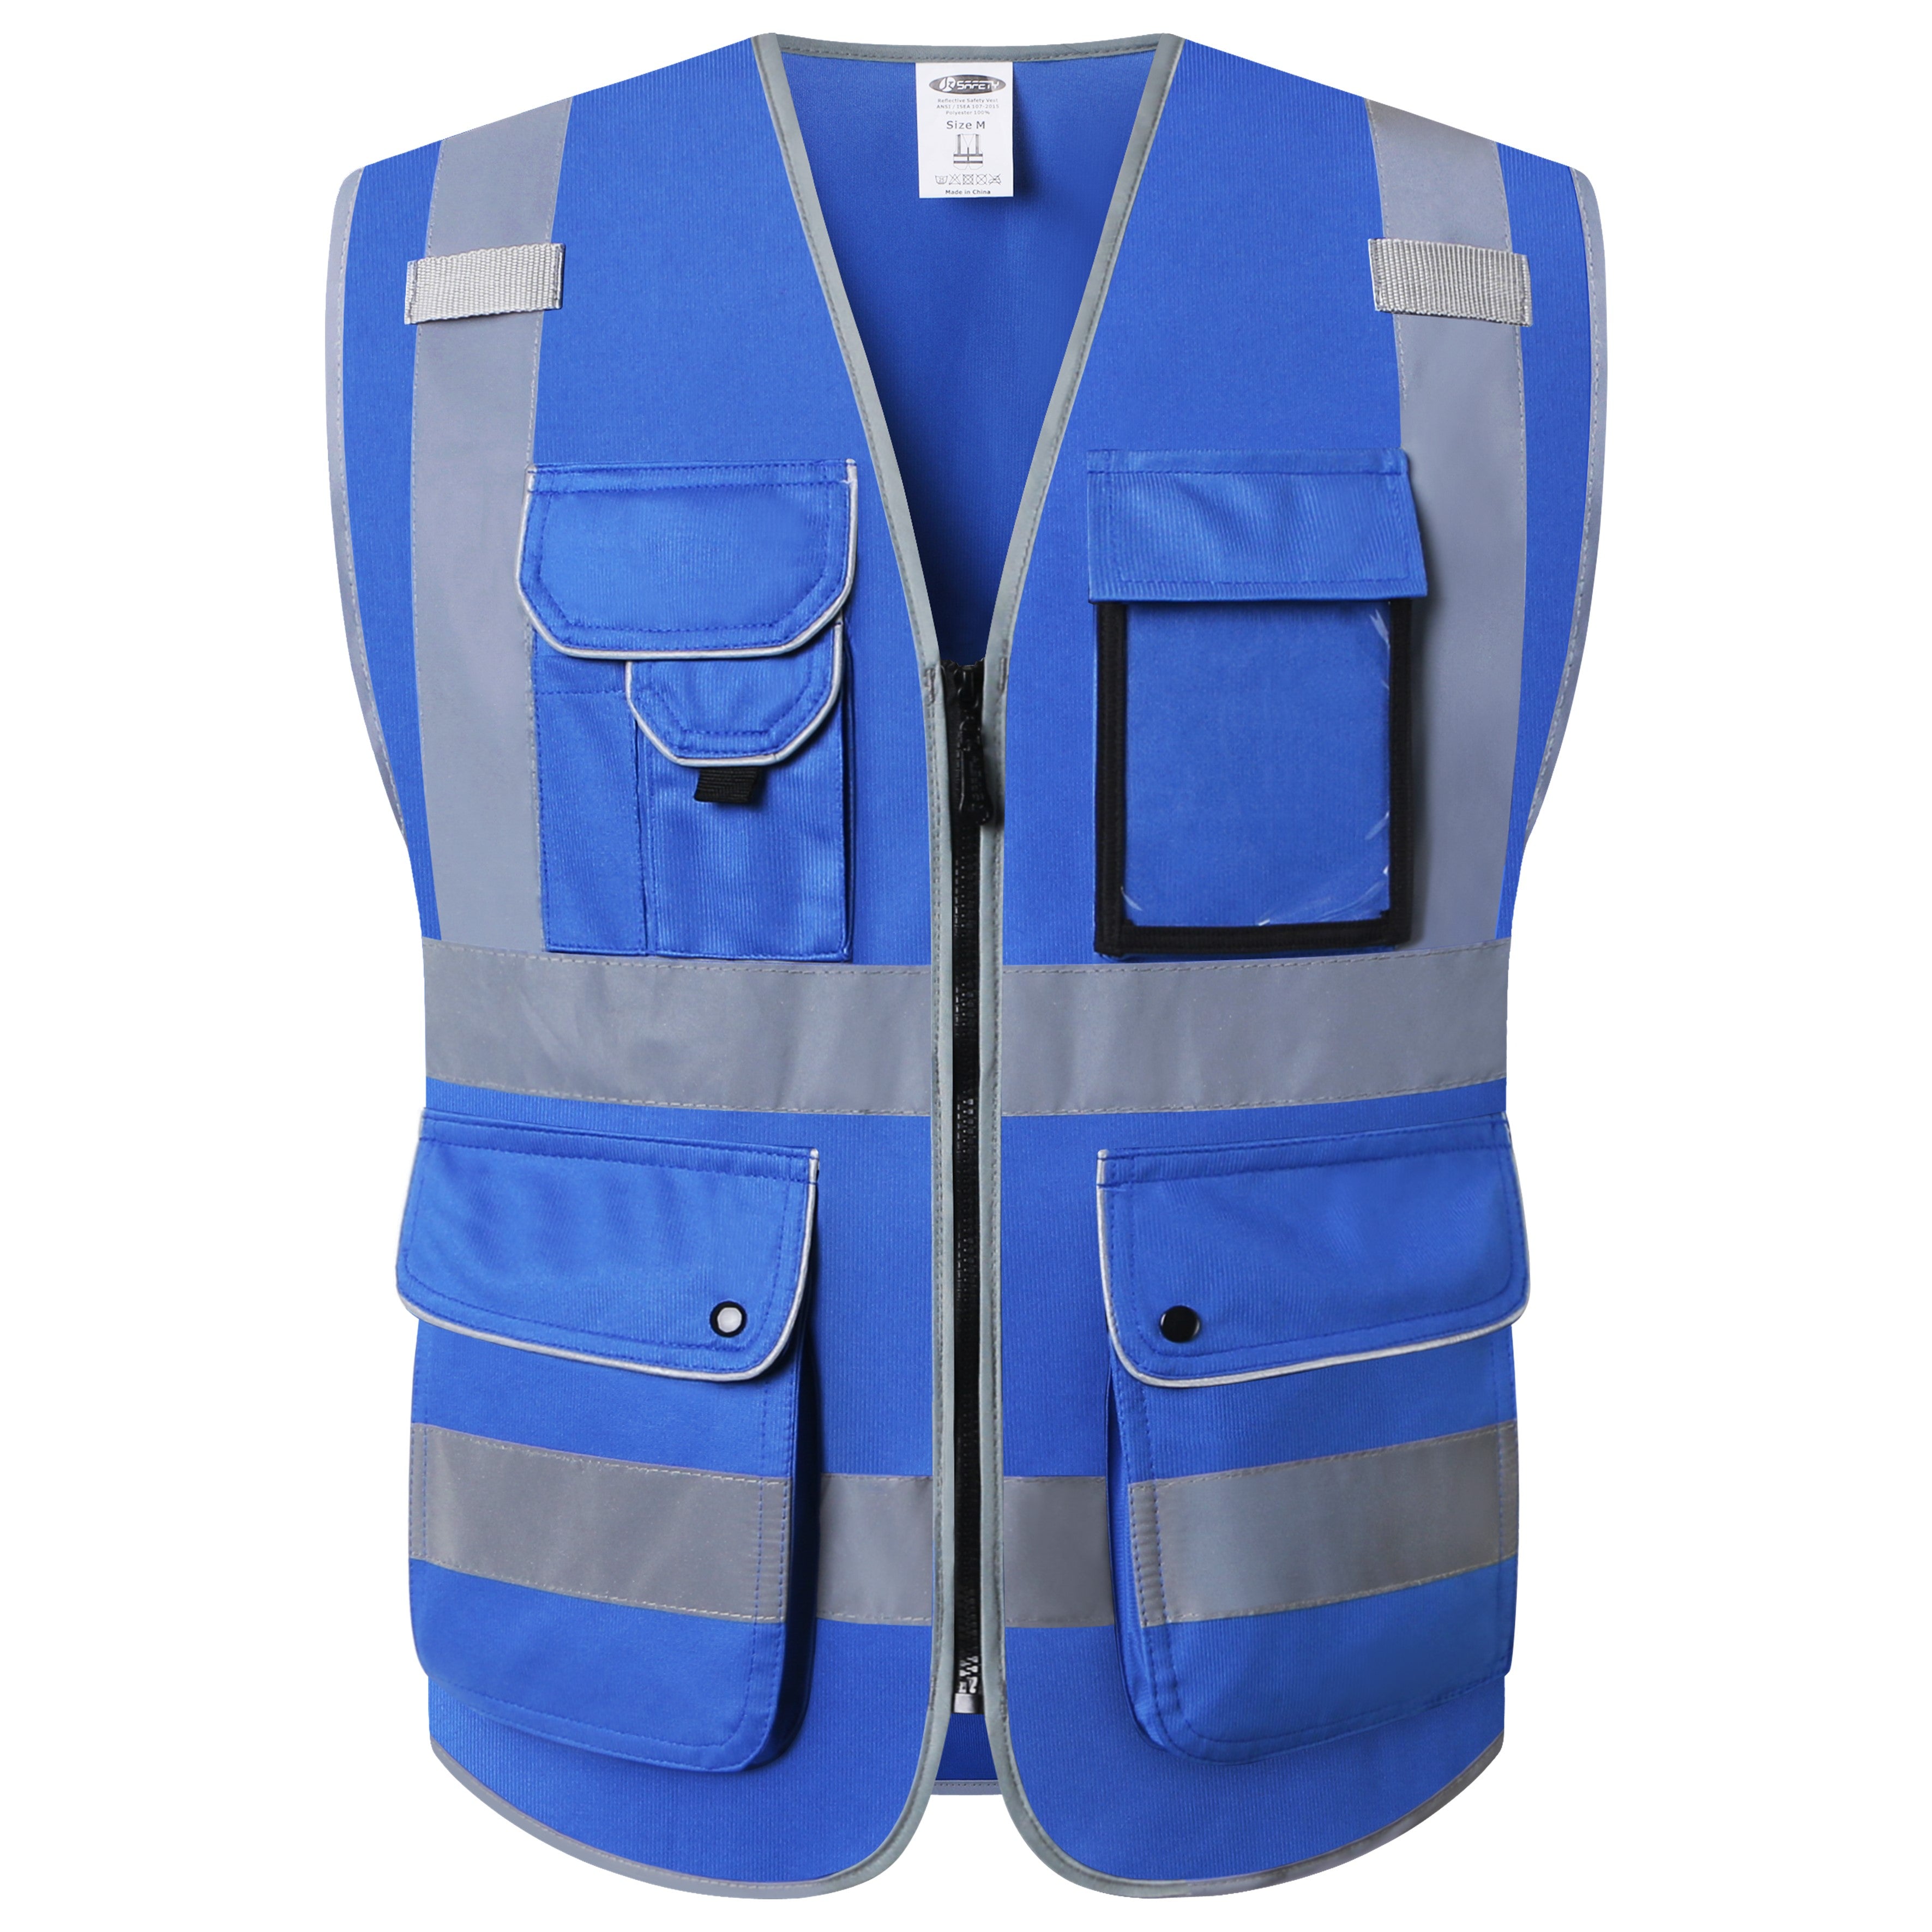 JKSafety 9 Pockets Hi-Vis Reflective Safety Vest